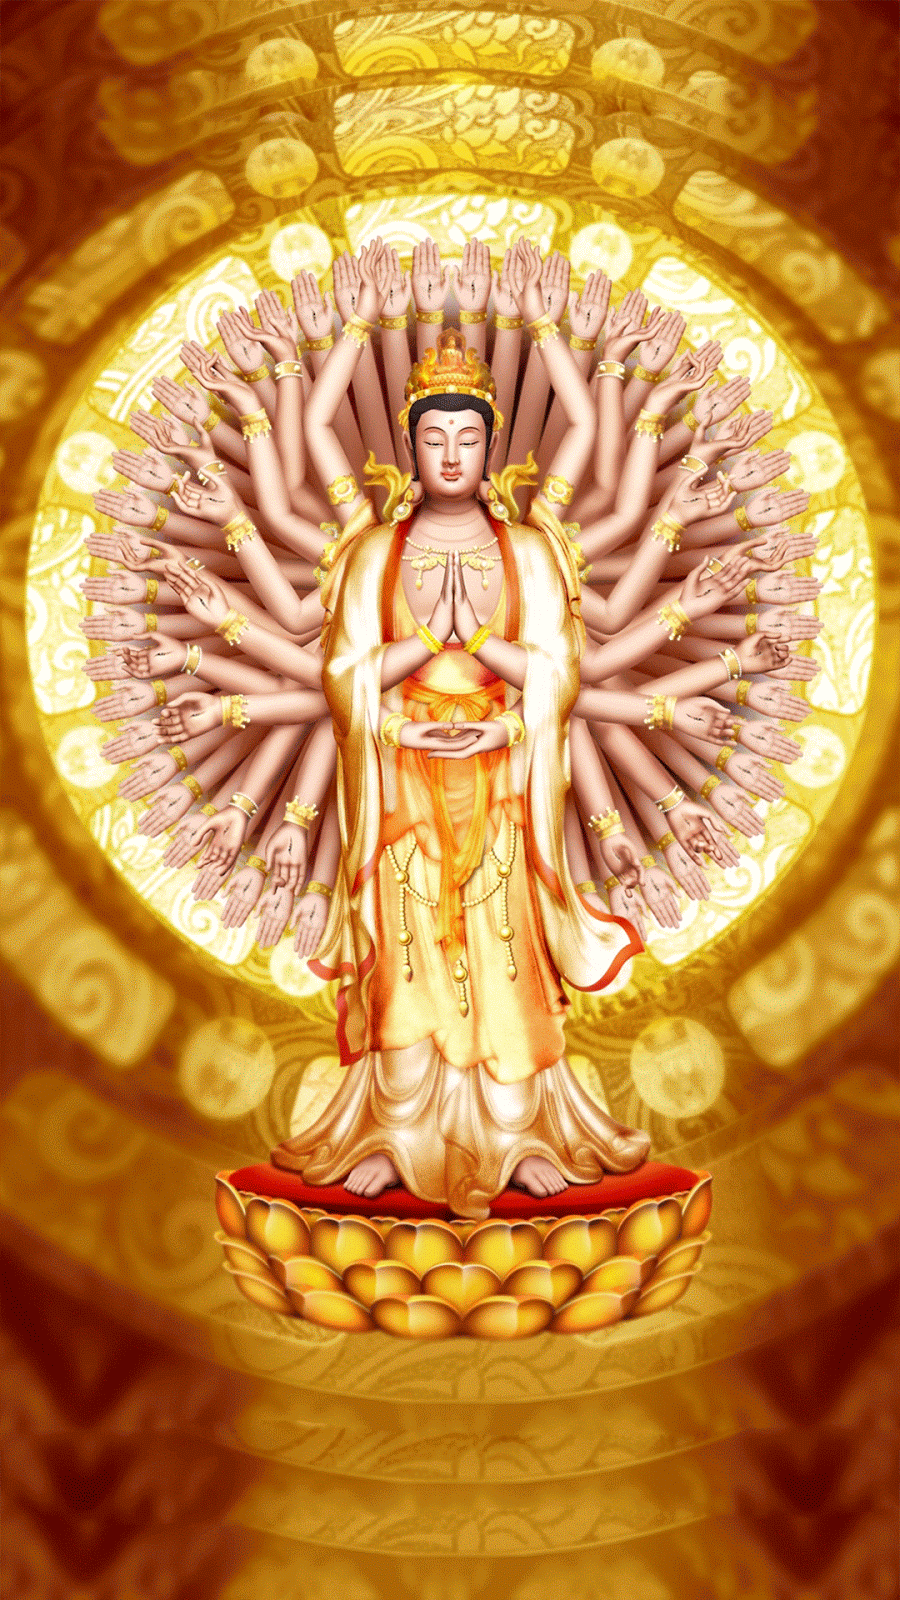 Phật là biểu tượng của tình yêu, sự bình an và sự sáng suốt. Hãy xem ảnh Phật để được truyền cảm hứng và tìm kiếm sự yên tĩnh và an lạc trong cuộc sống.